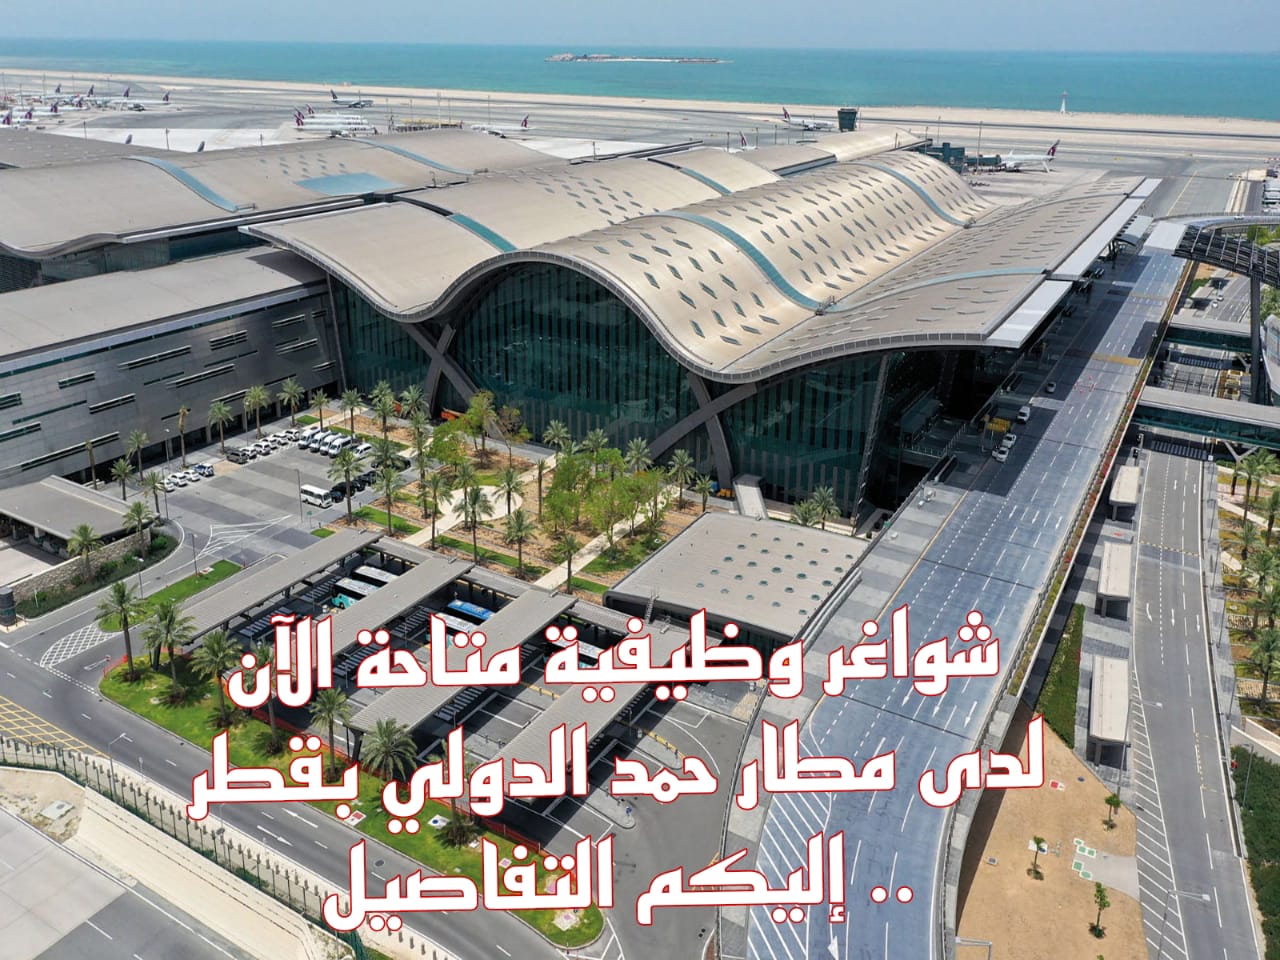  وظائف شاغرة في مطار حمد الدولي بقطر